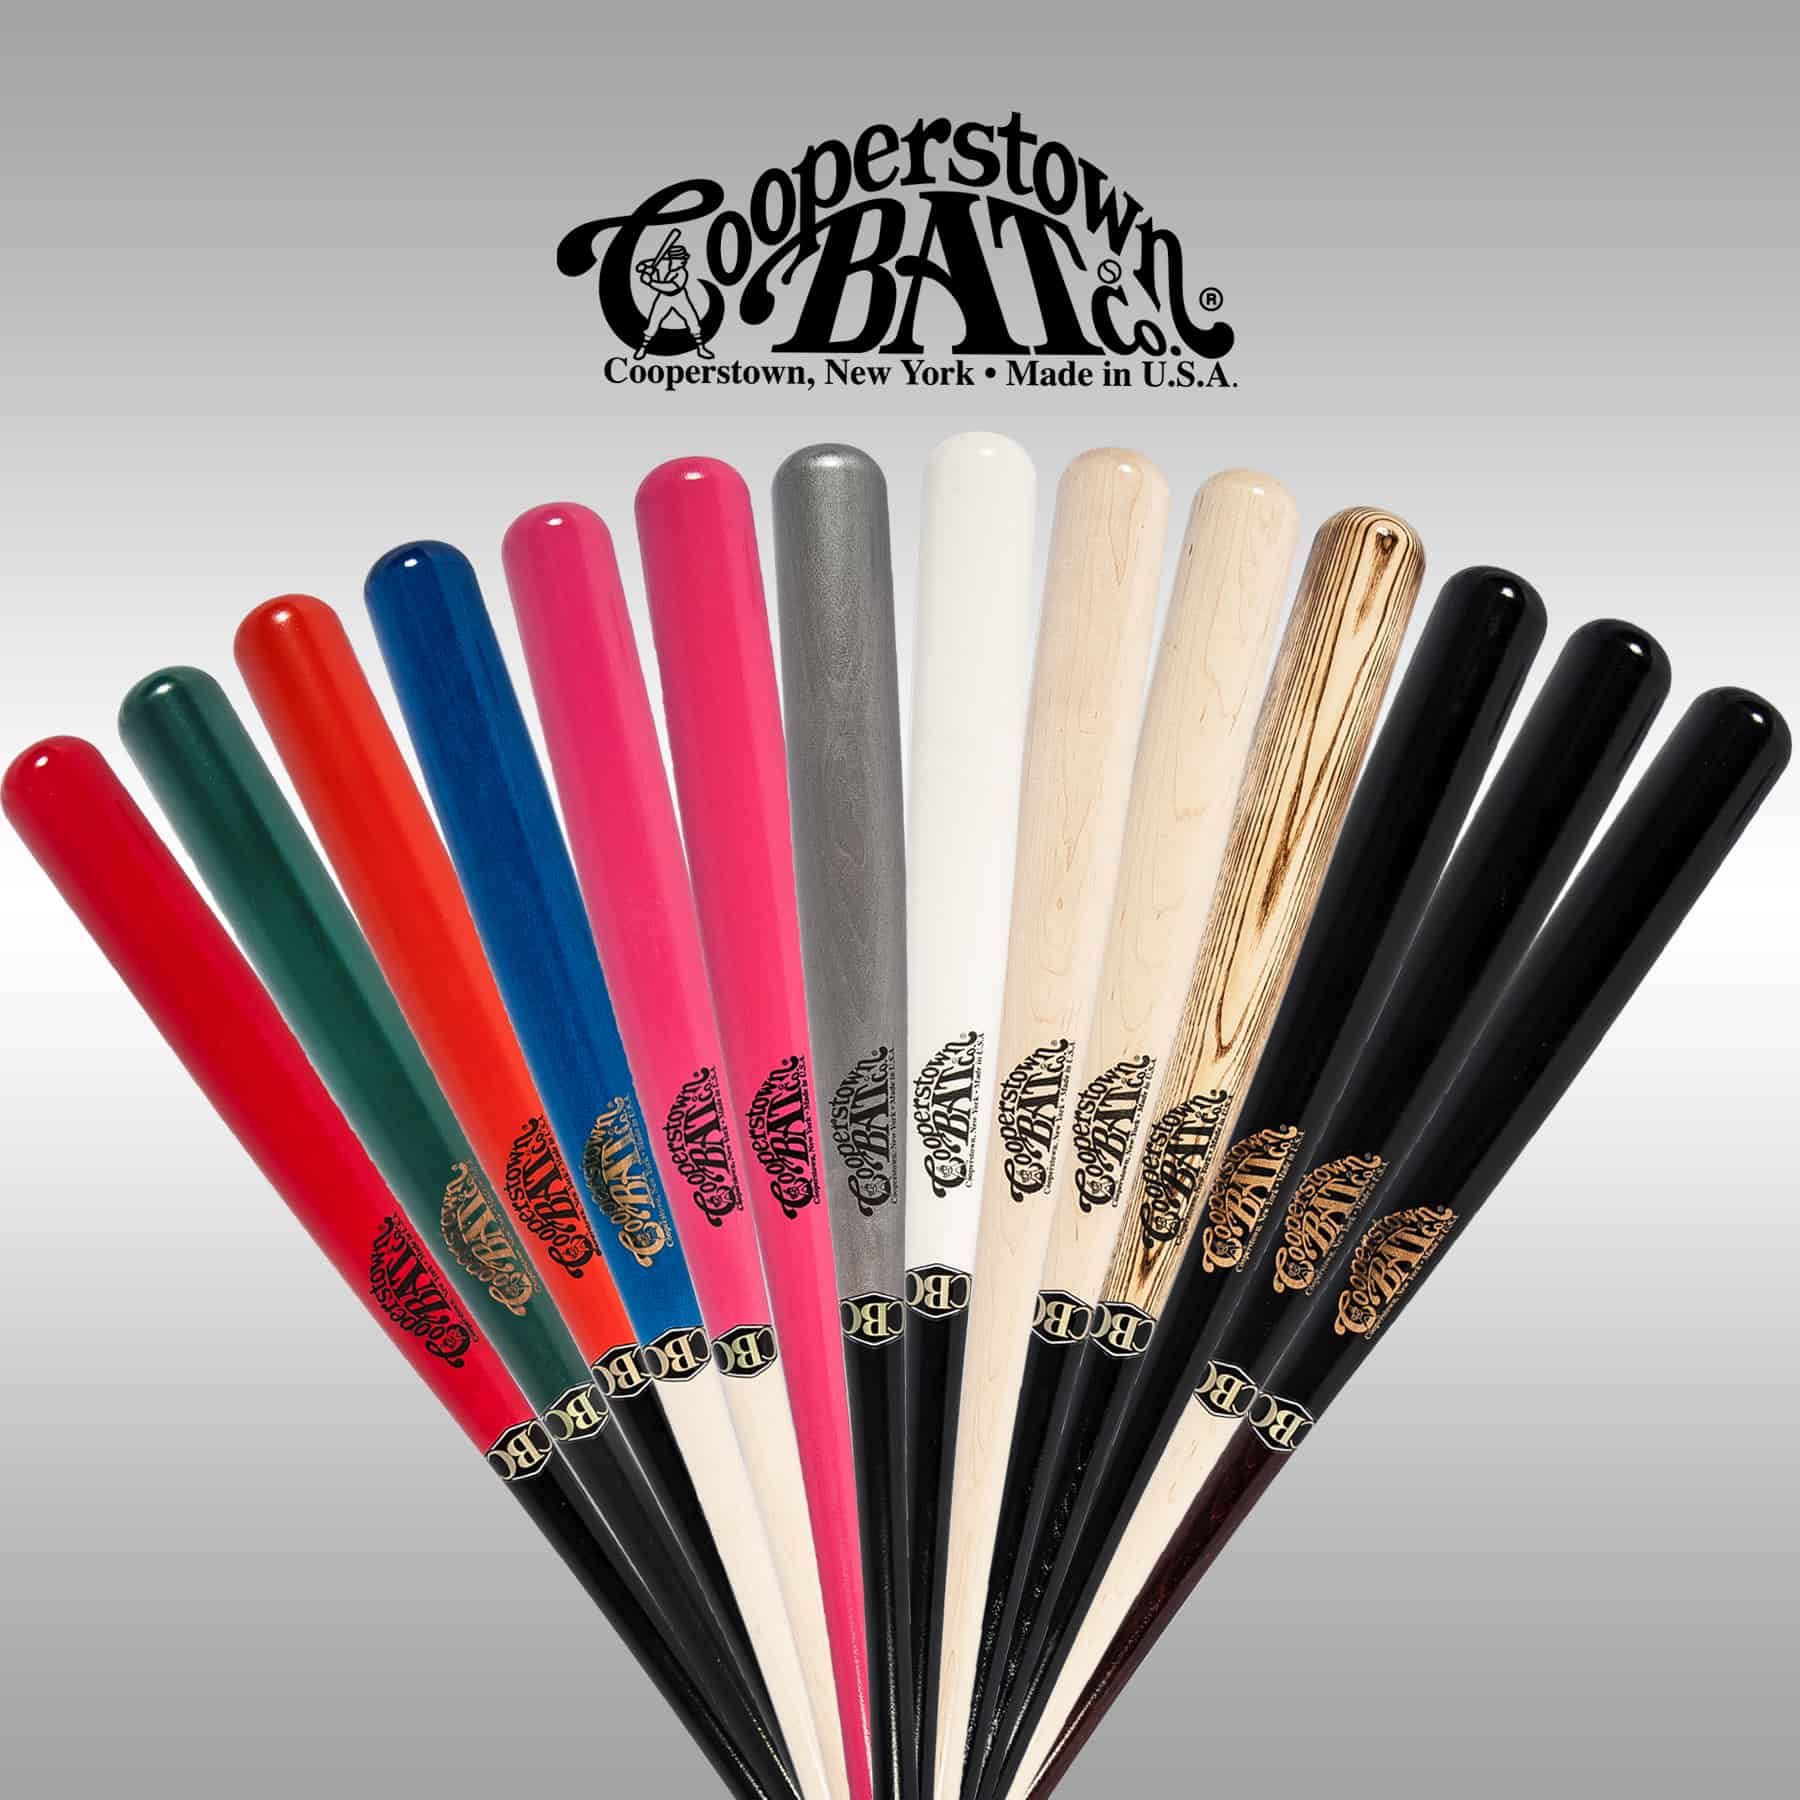 MLB Team Shop - Collectible & Souvenir Bats